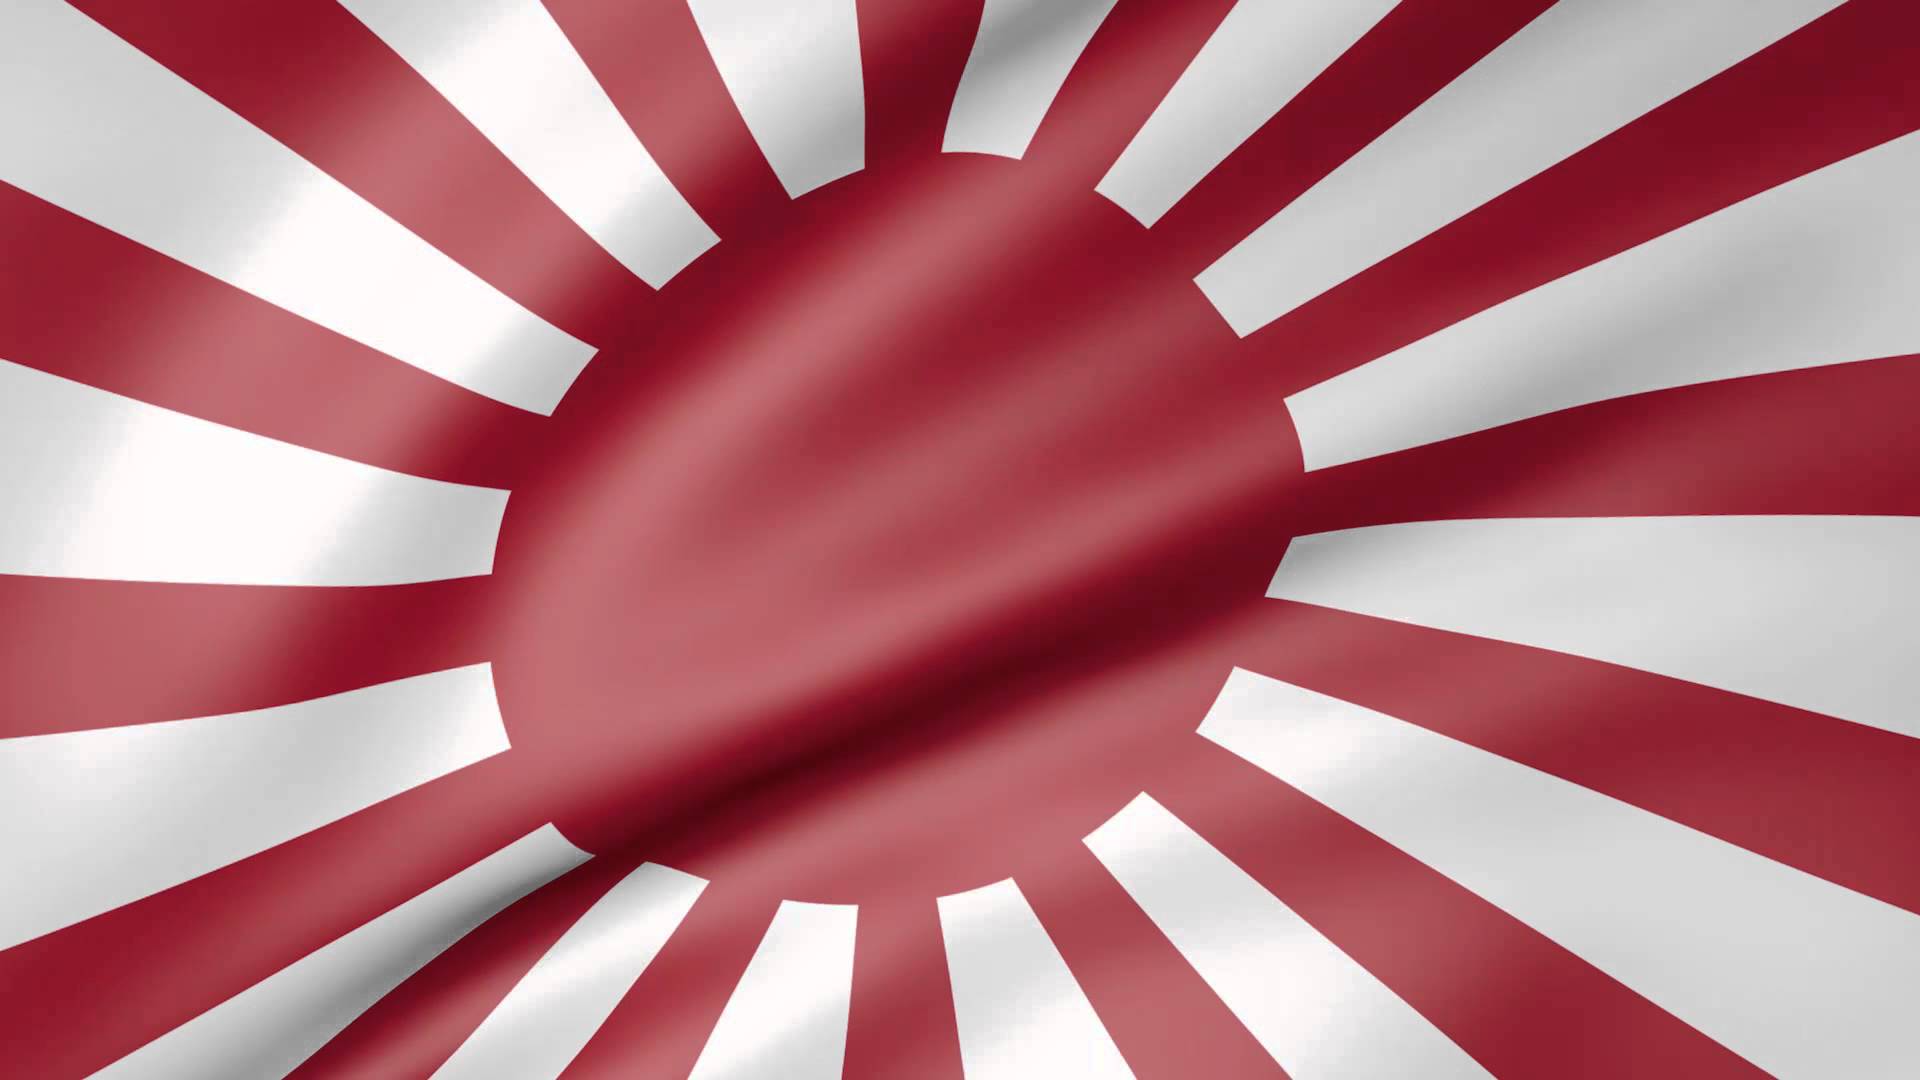 Japan Flag Background Design Free Download From pixlokcom